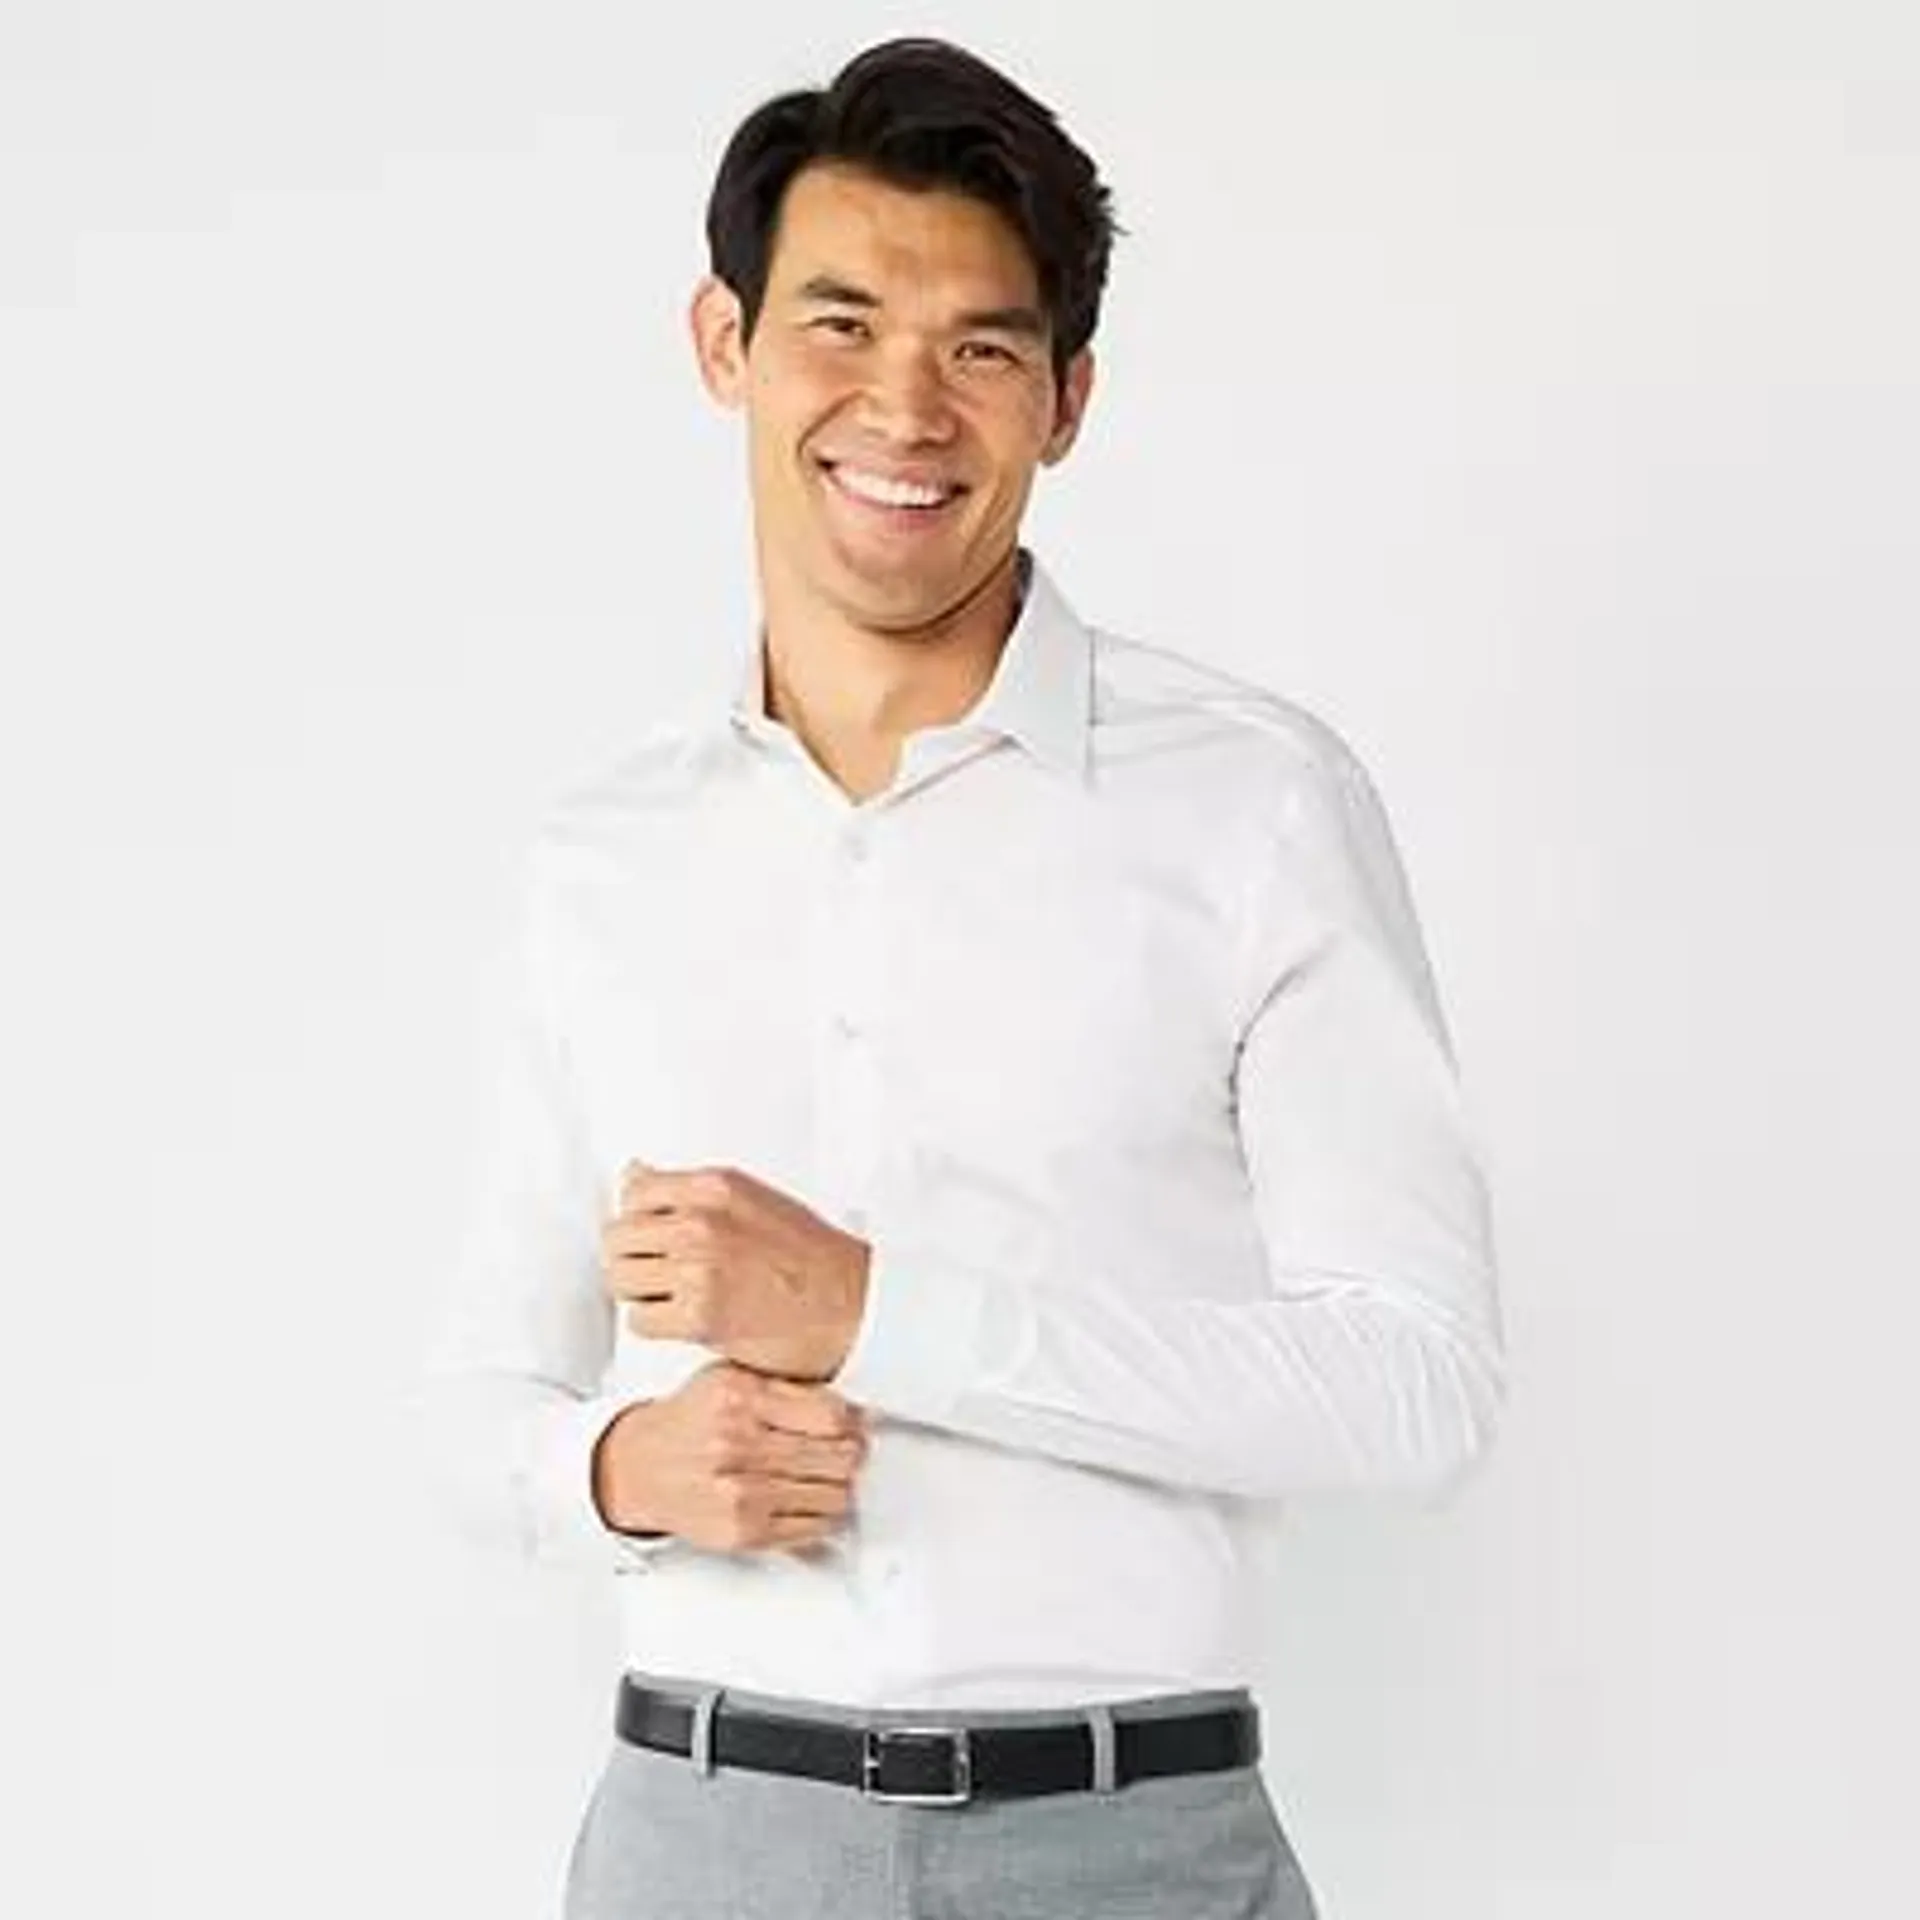 Men's Apt. 9® Premier Flex Solid Slim-Fit Wrinkle Resistant Dress Shirt